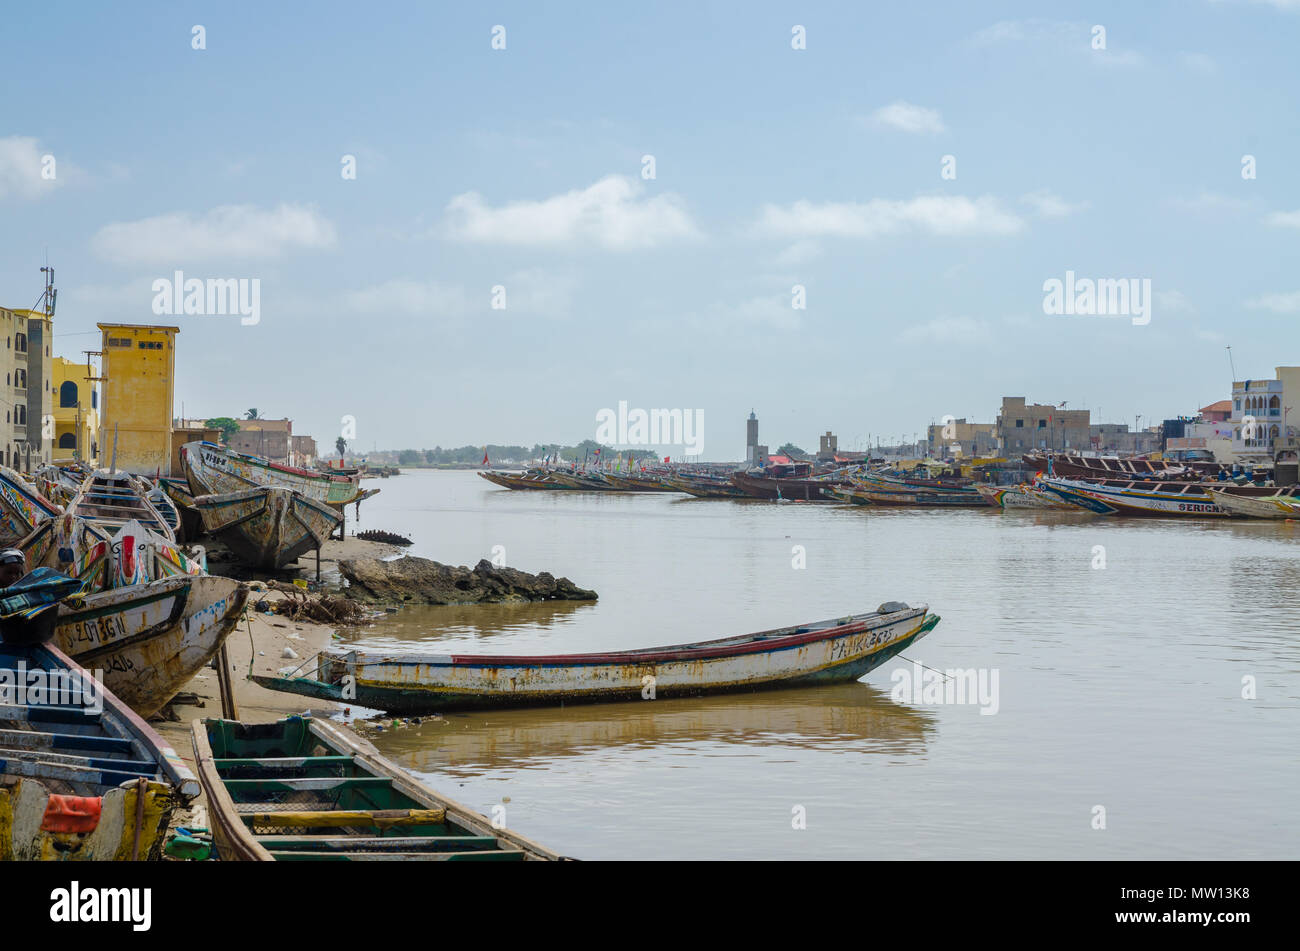 St. Louis, Senegal - 12. Oktober 2014: bunt bemalten hölzernen Fischerboote oder pirogen an der Küste von St. Louis. Stockfoto